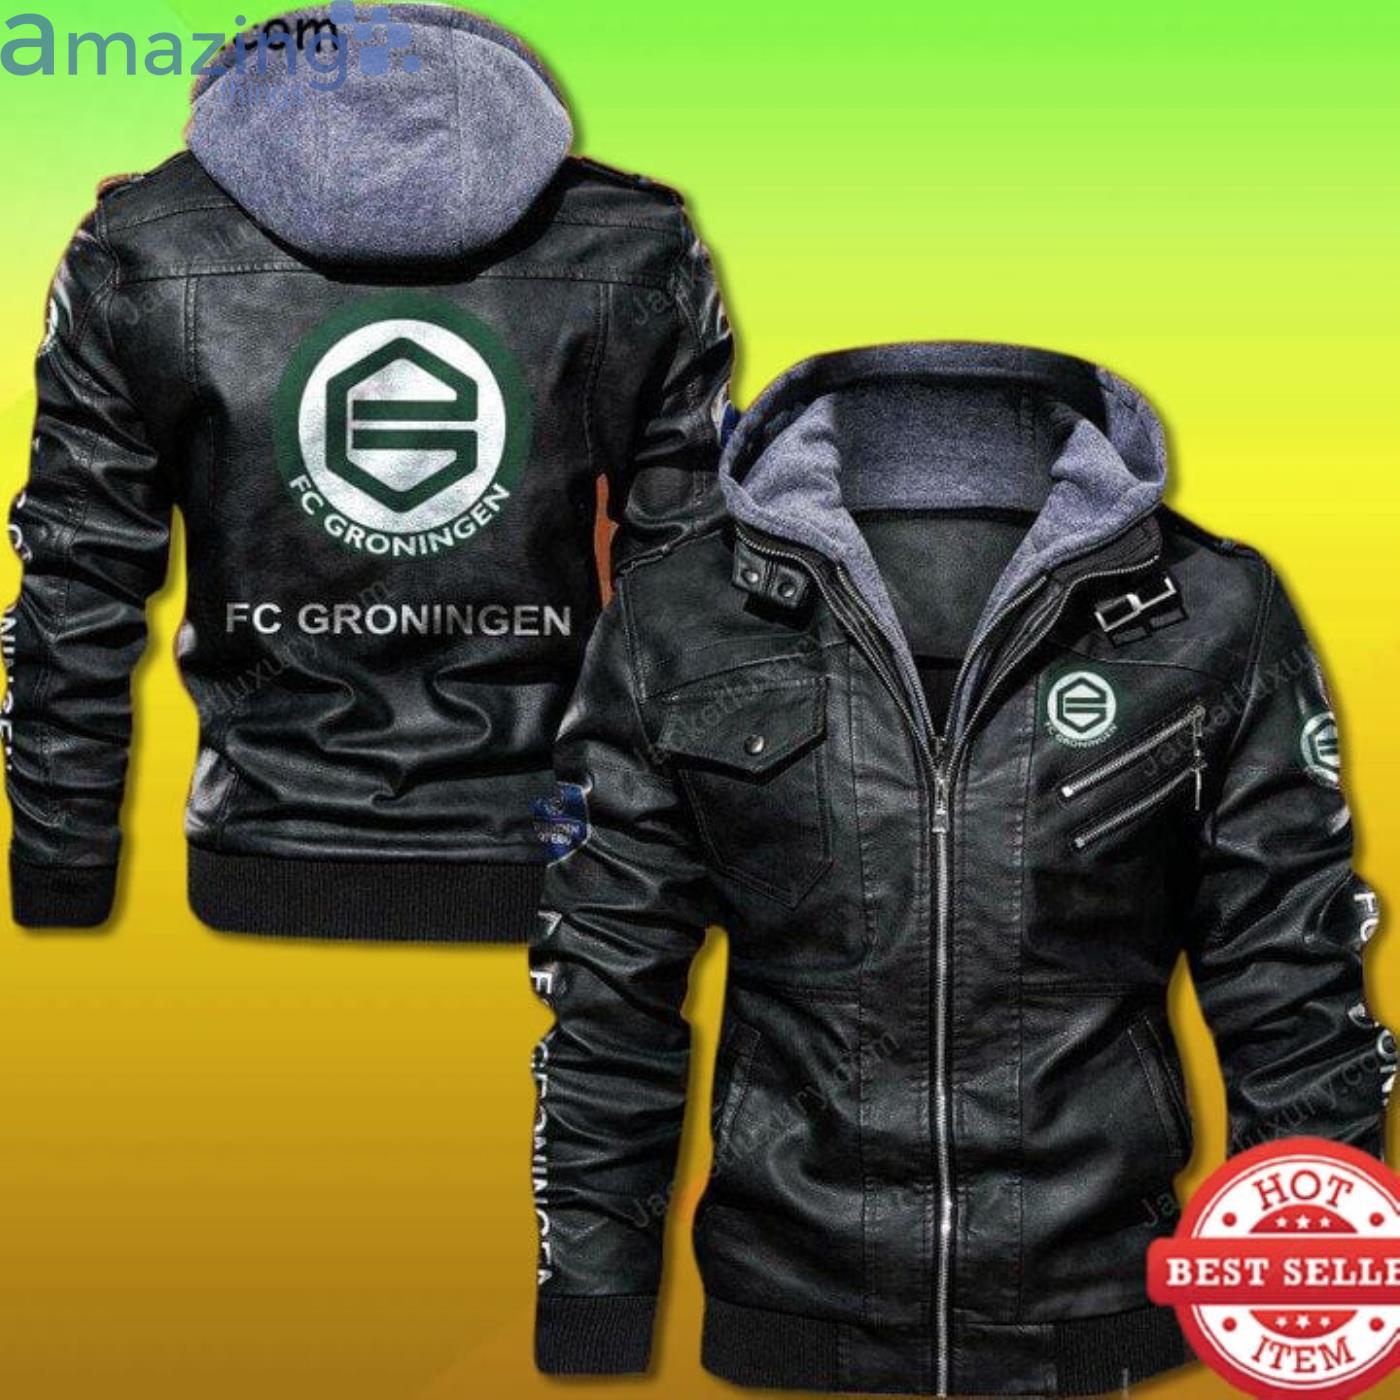 FC Groningen 2D Leather Jacket